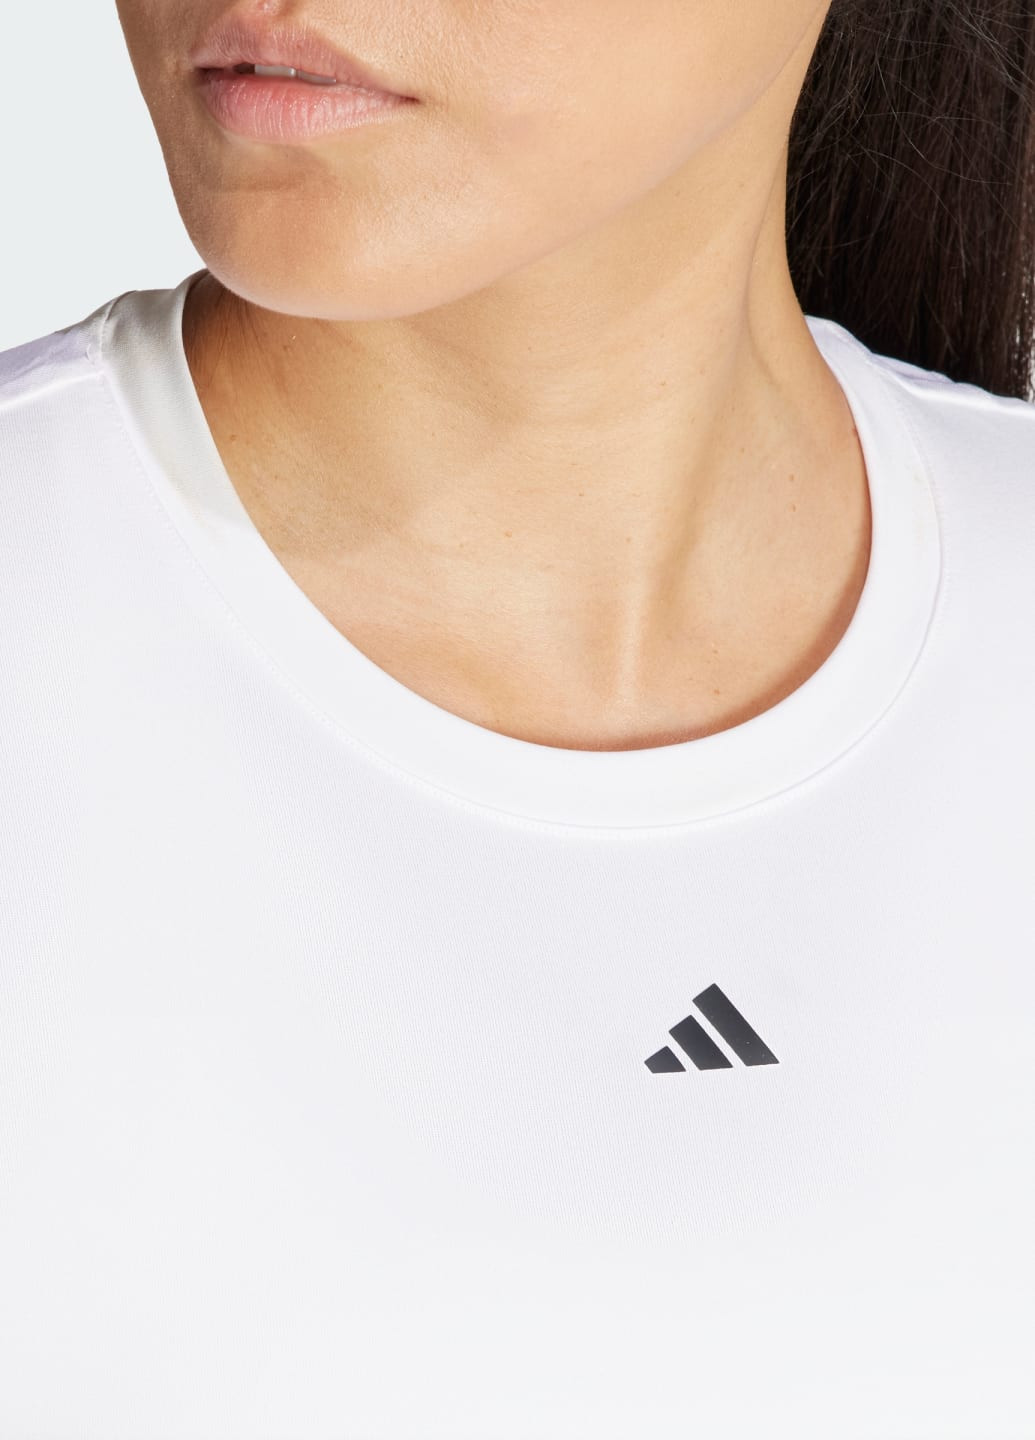 Белая всесезон футболка designed for training adidas